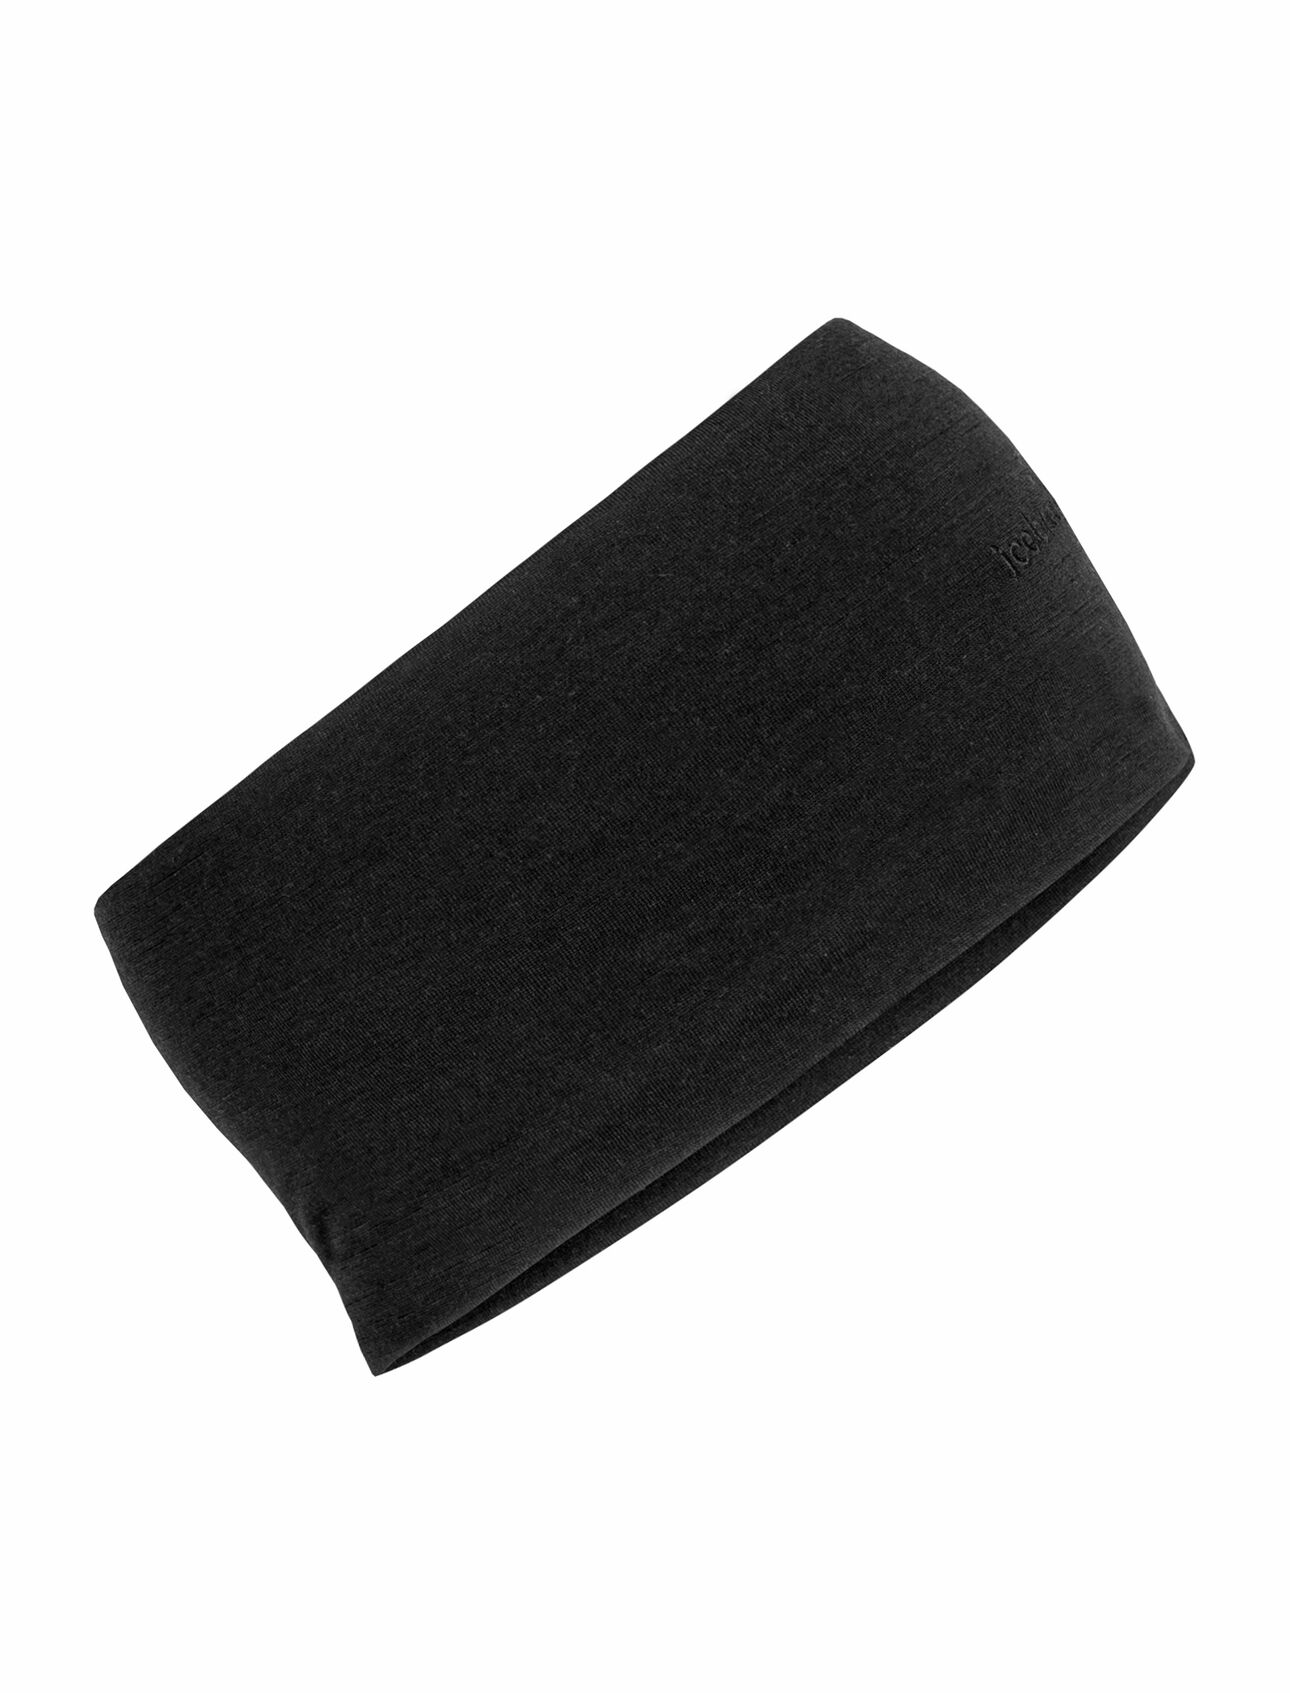 Unisex Čelenka Cool-Lite™ Merino Flexi Headband Naše měkká a pružná čelenka z merino vlny pro celoroční výkon, čelenka Flexi, má lehkou, prodyšnou a vlhkost odvádějící tkaninu Cool-Lite™ jersey.